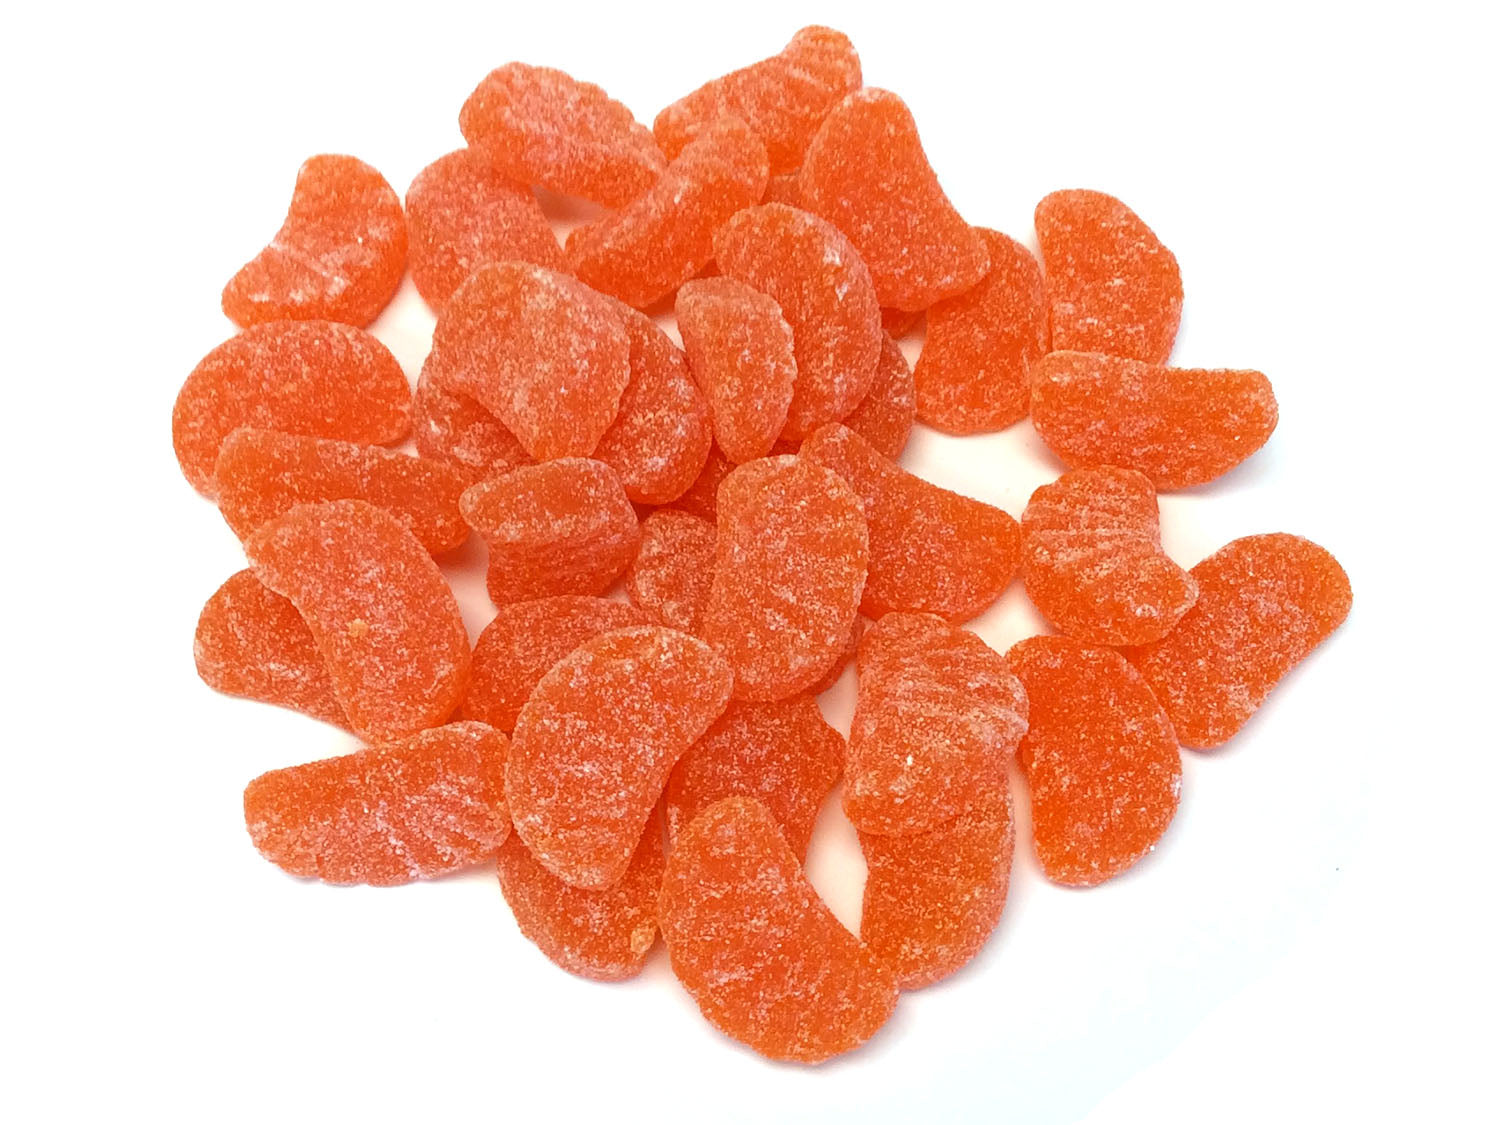 Orange Slices - Bulk 3 lb bag